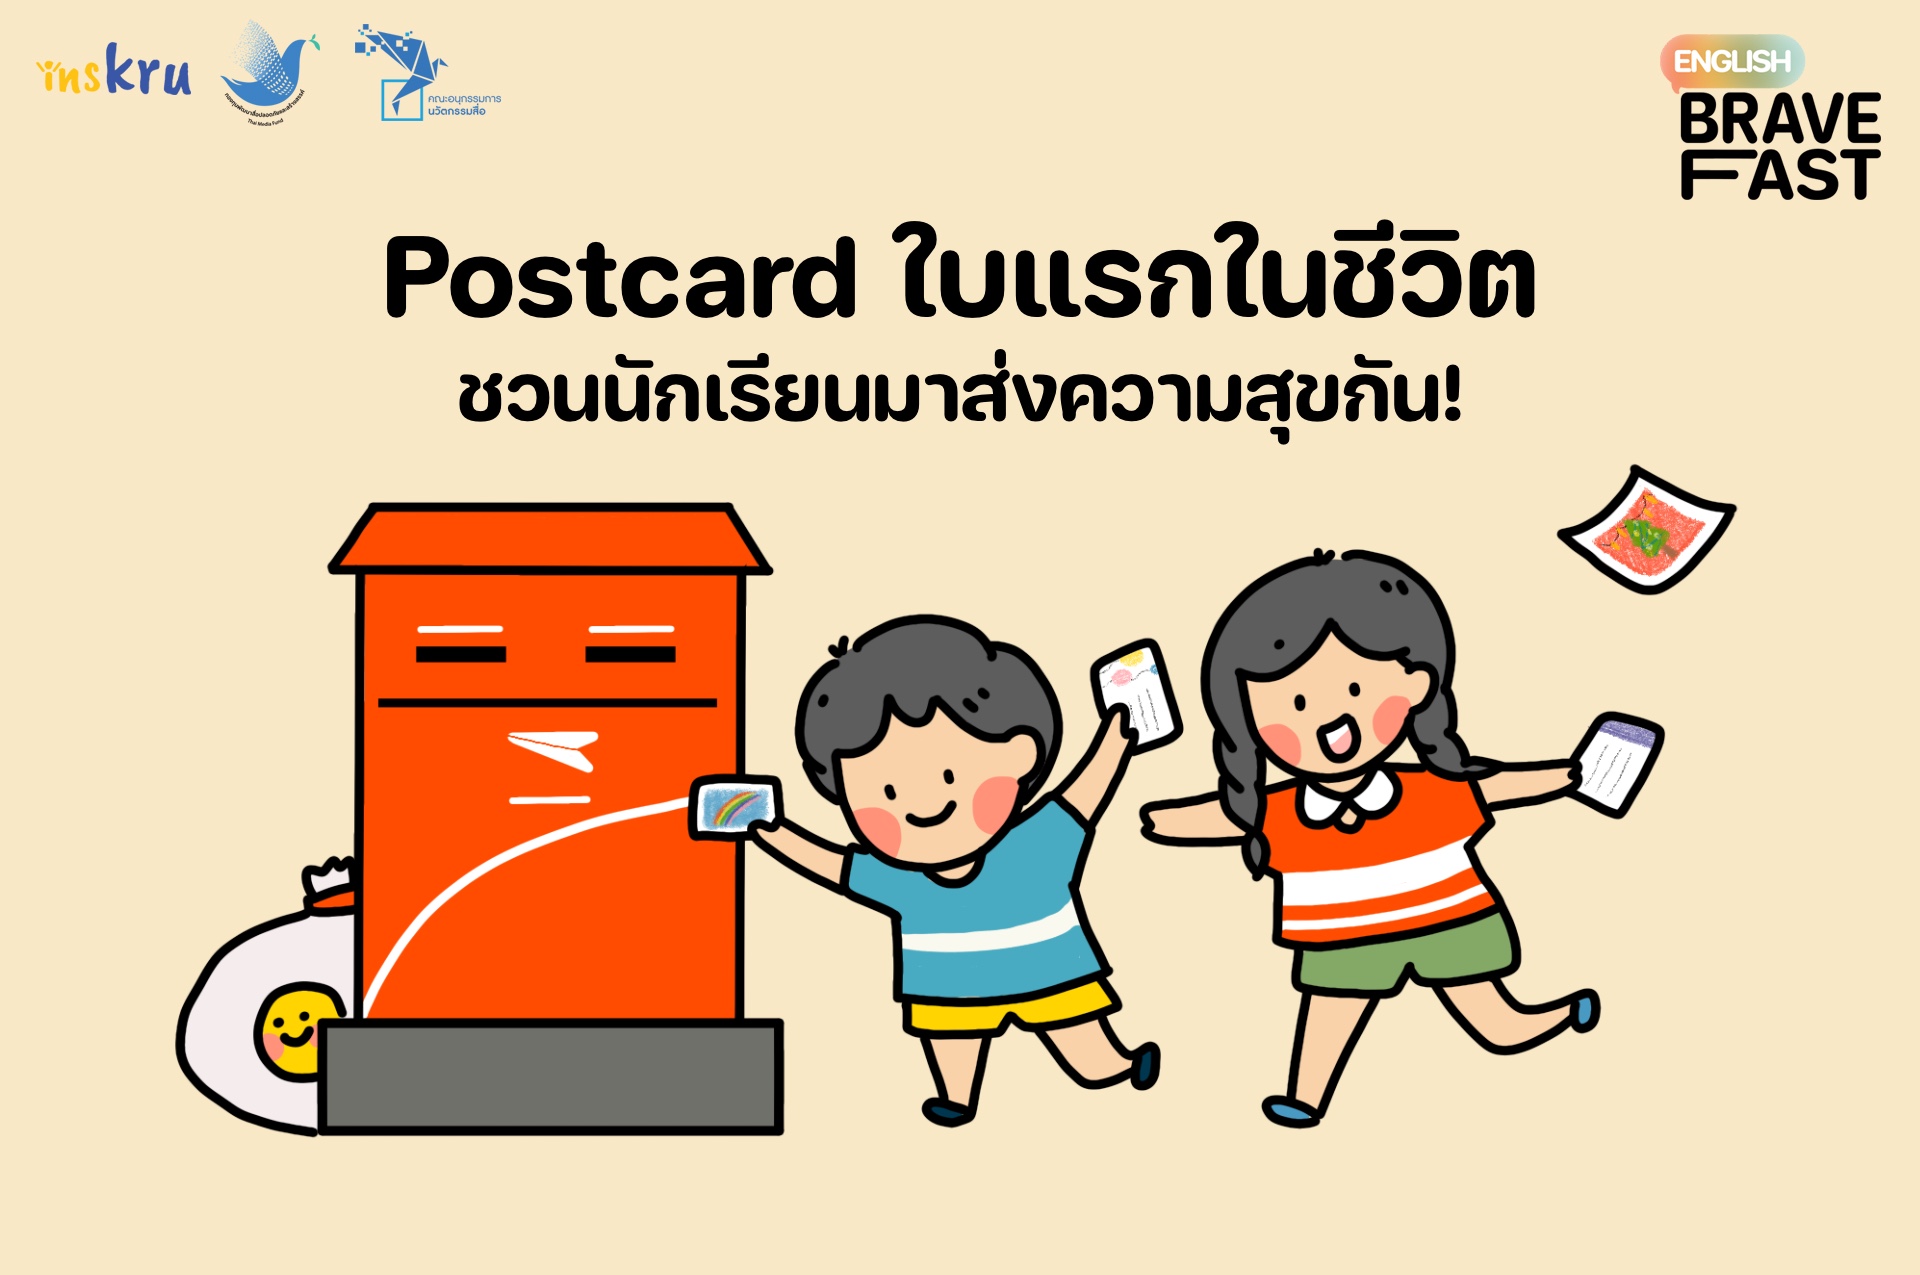 ภาพประกอบไอเดีย Postcard ใบแรกในชีวิต ชวนนักเรียนมาส่งความสุขกัน!